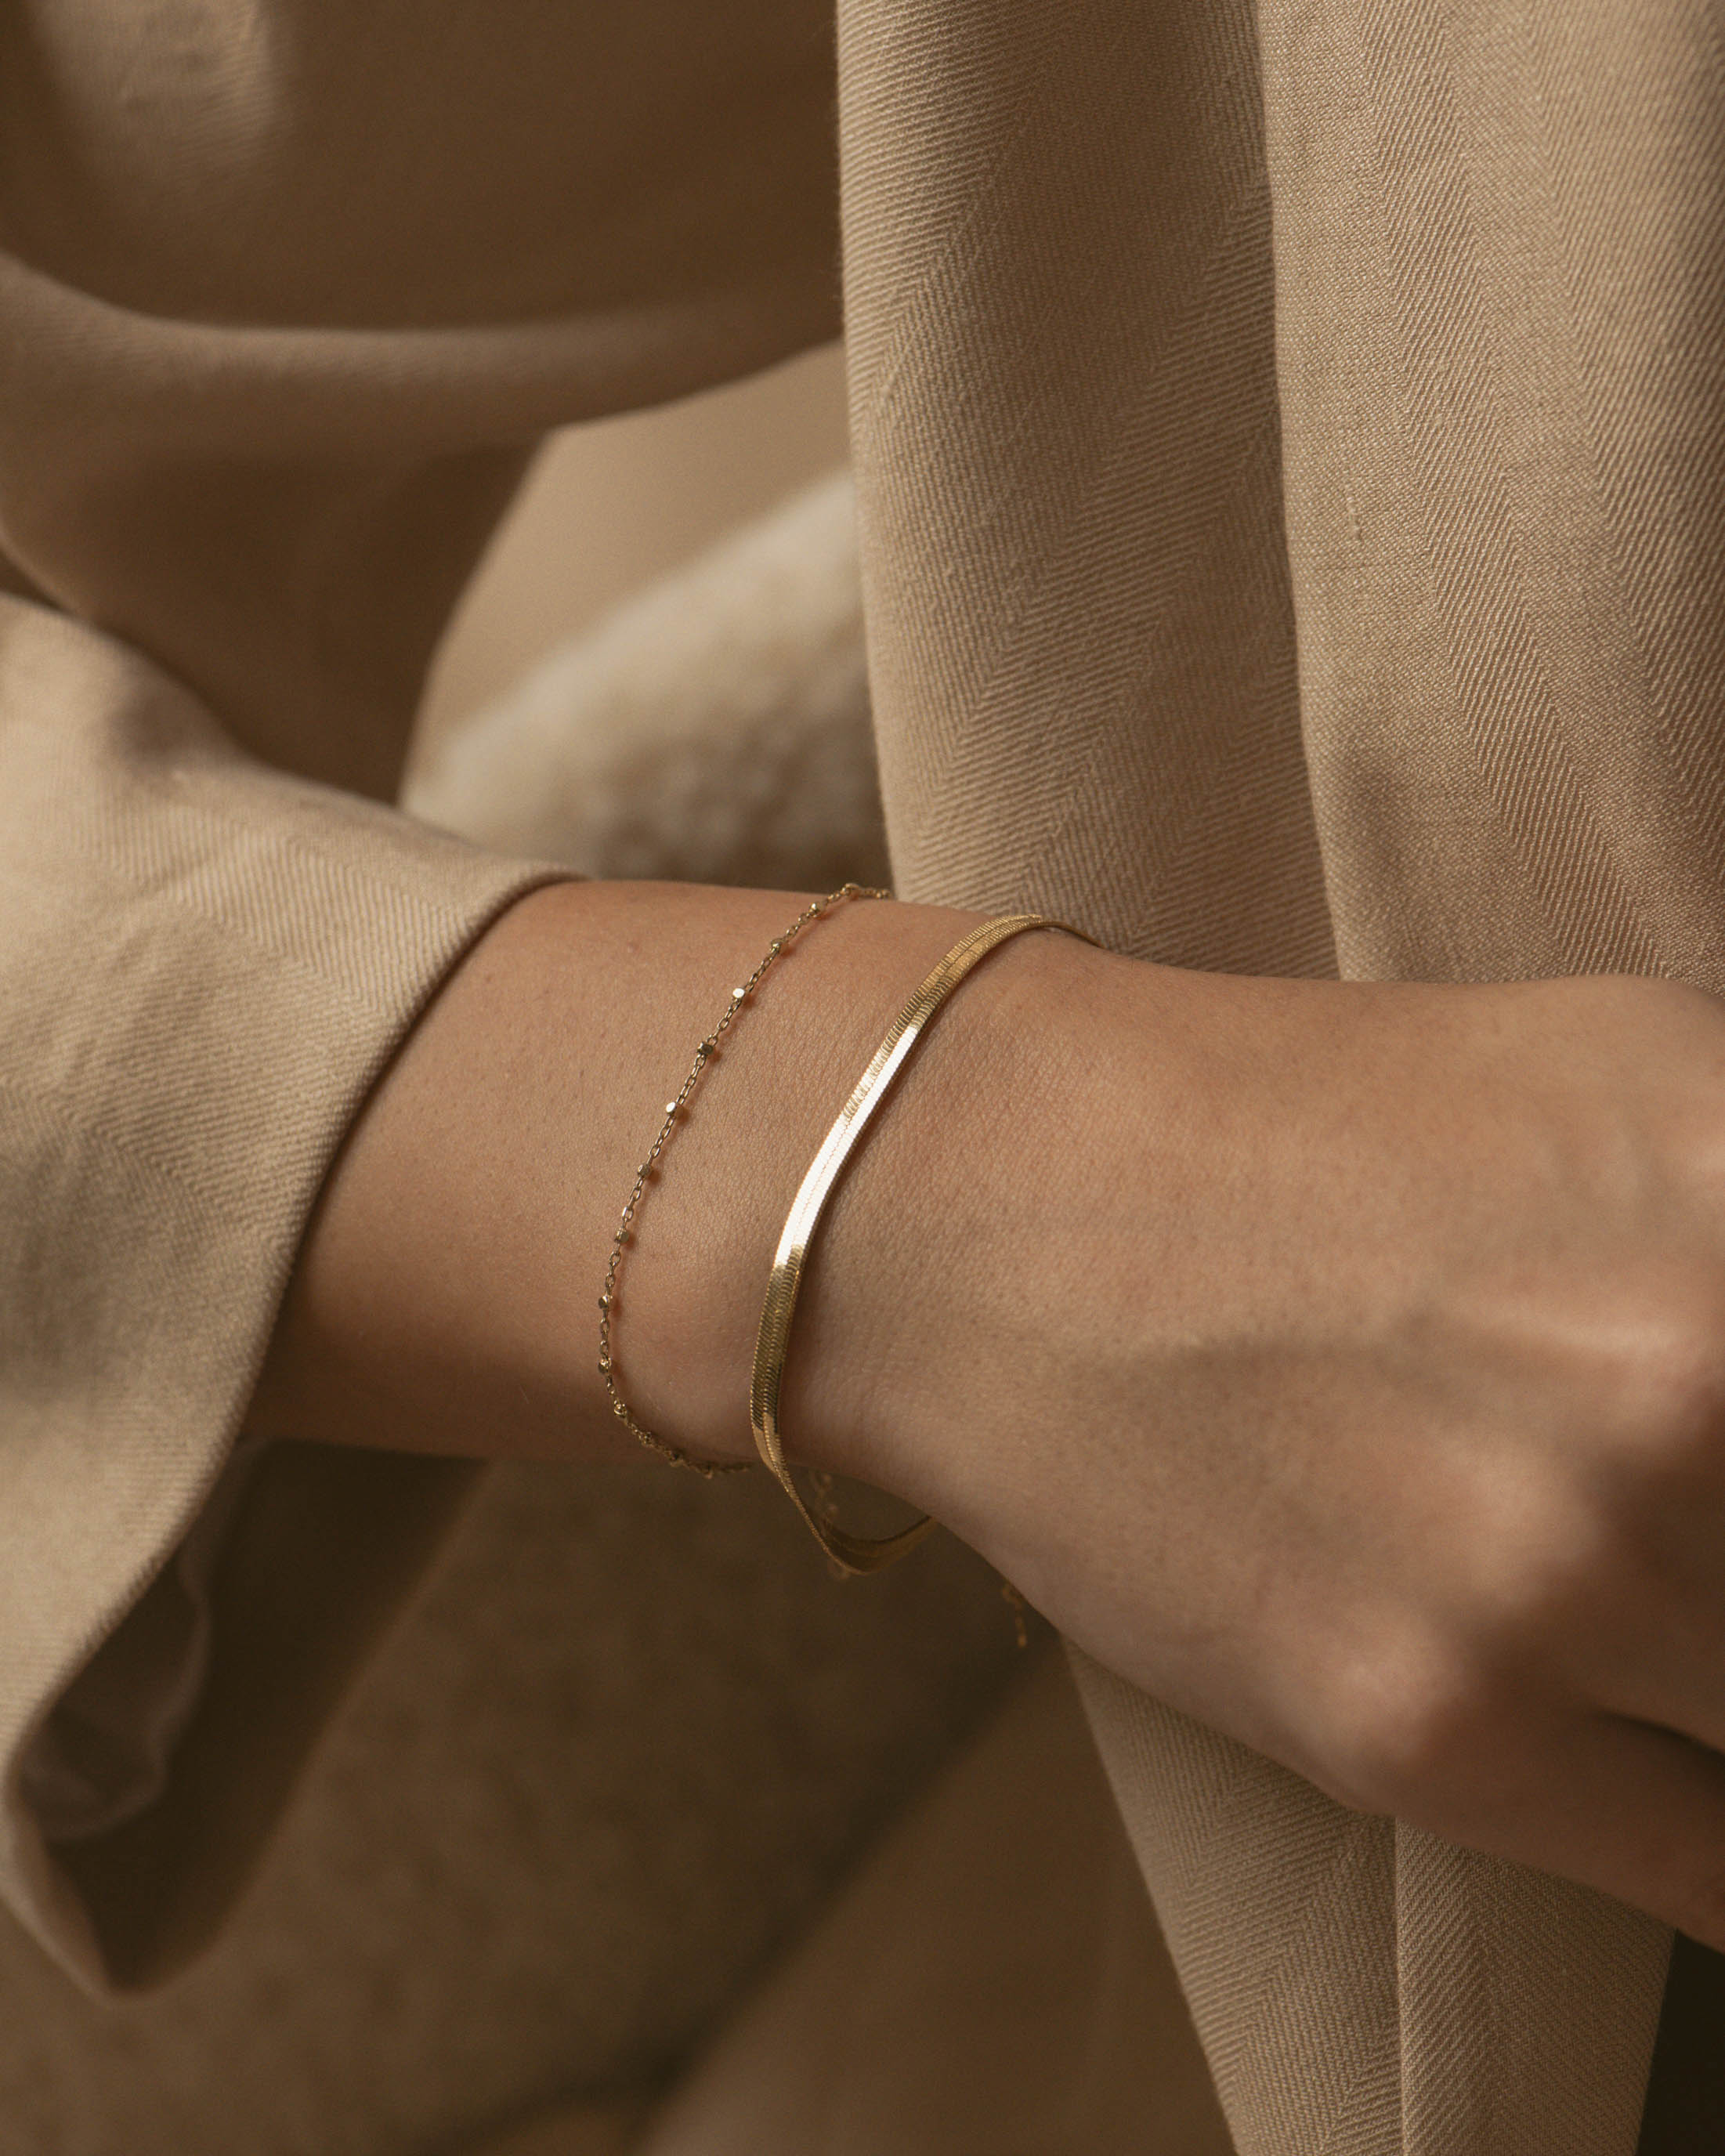 Association de bracelets en plaqué or 18 carats, composée d'un bracelet en chaîne plate, et d'un bracelet en chaîne fine avec des petites mailles carrées, fabriqués en France.